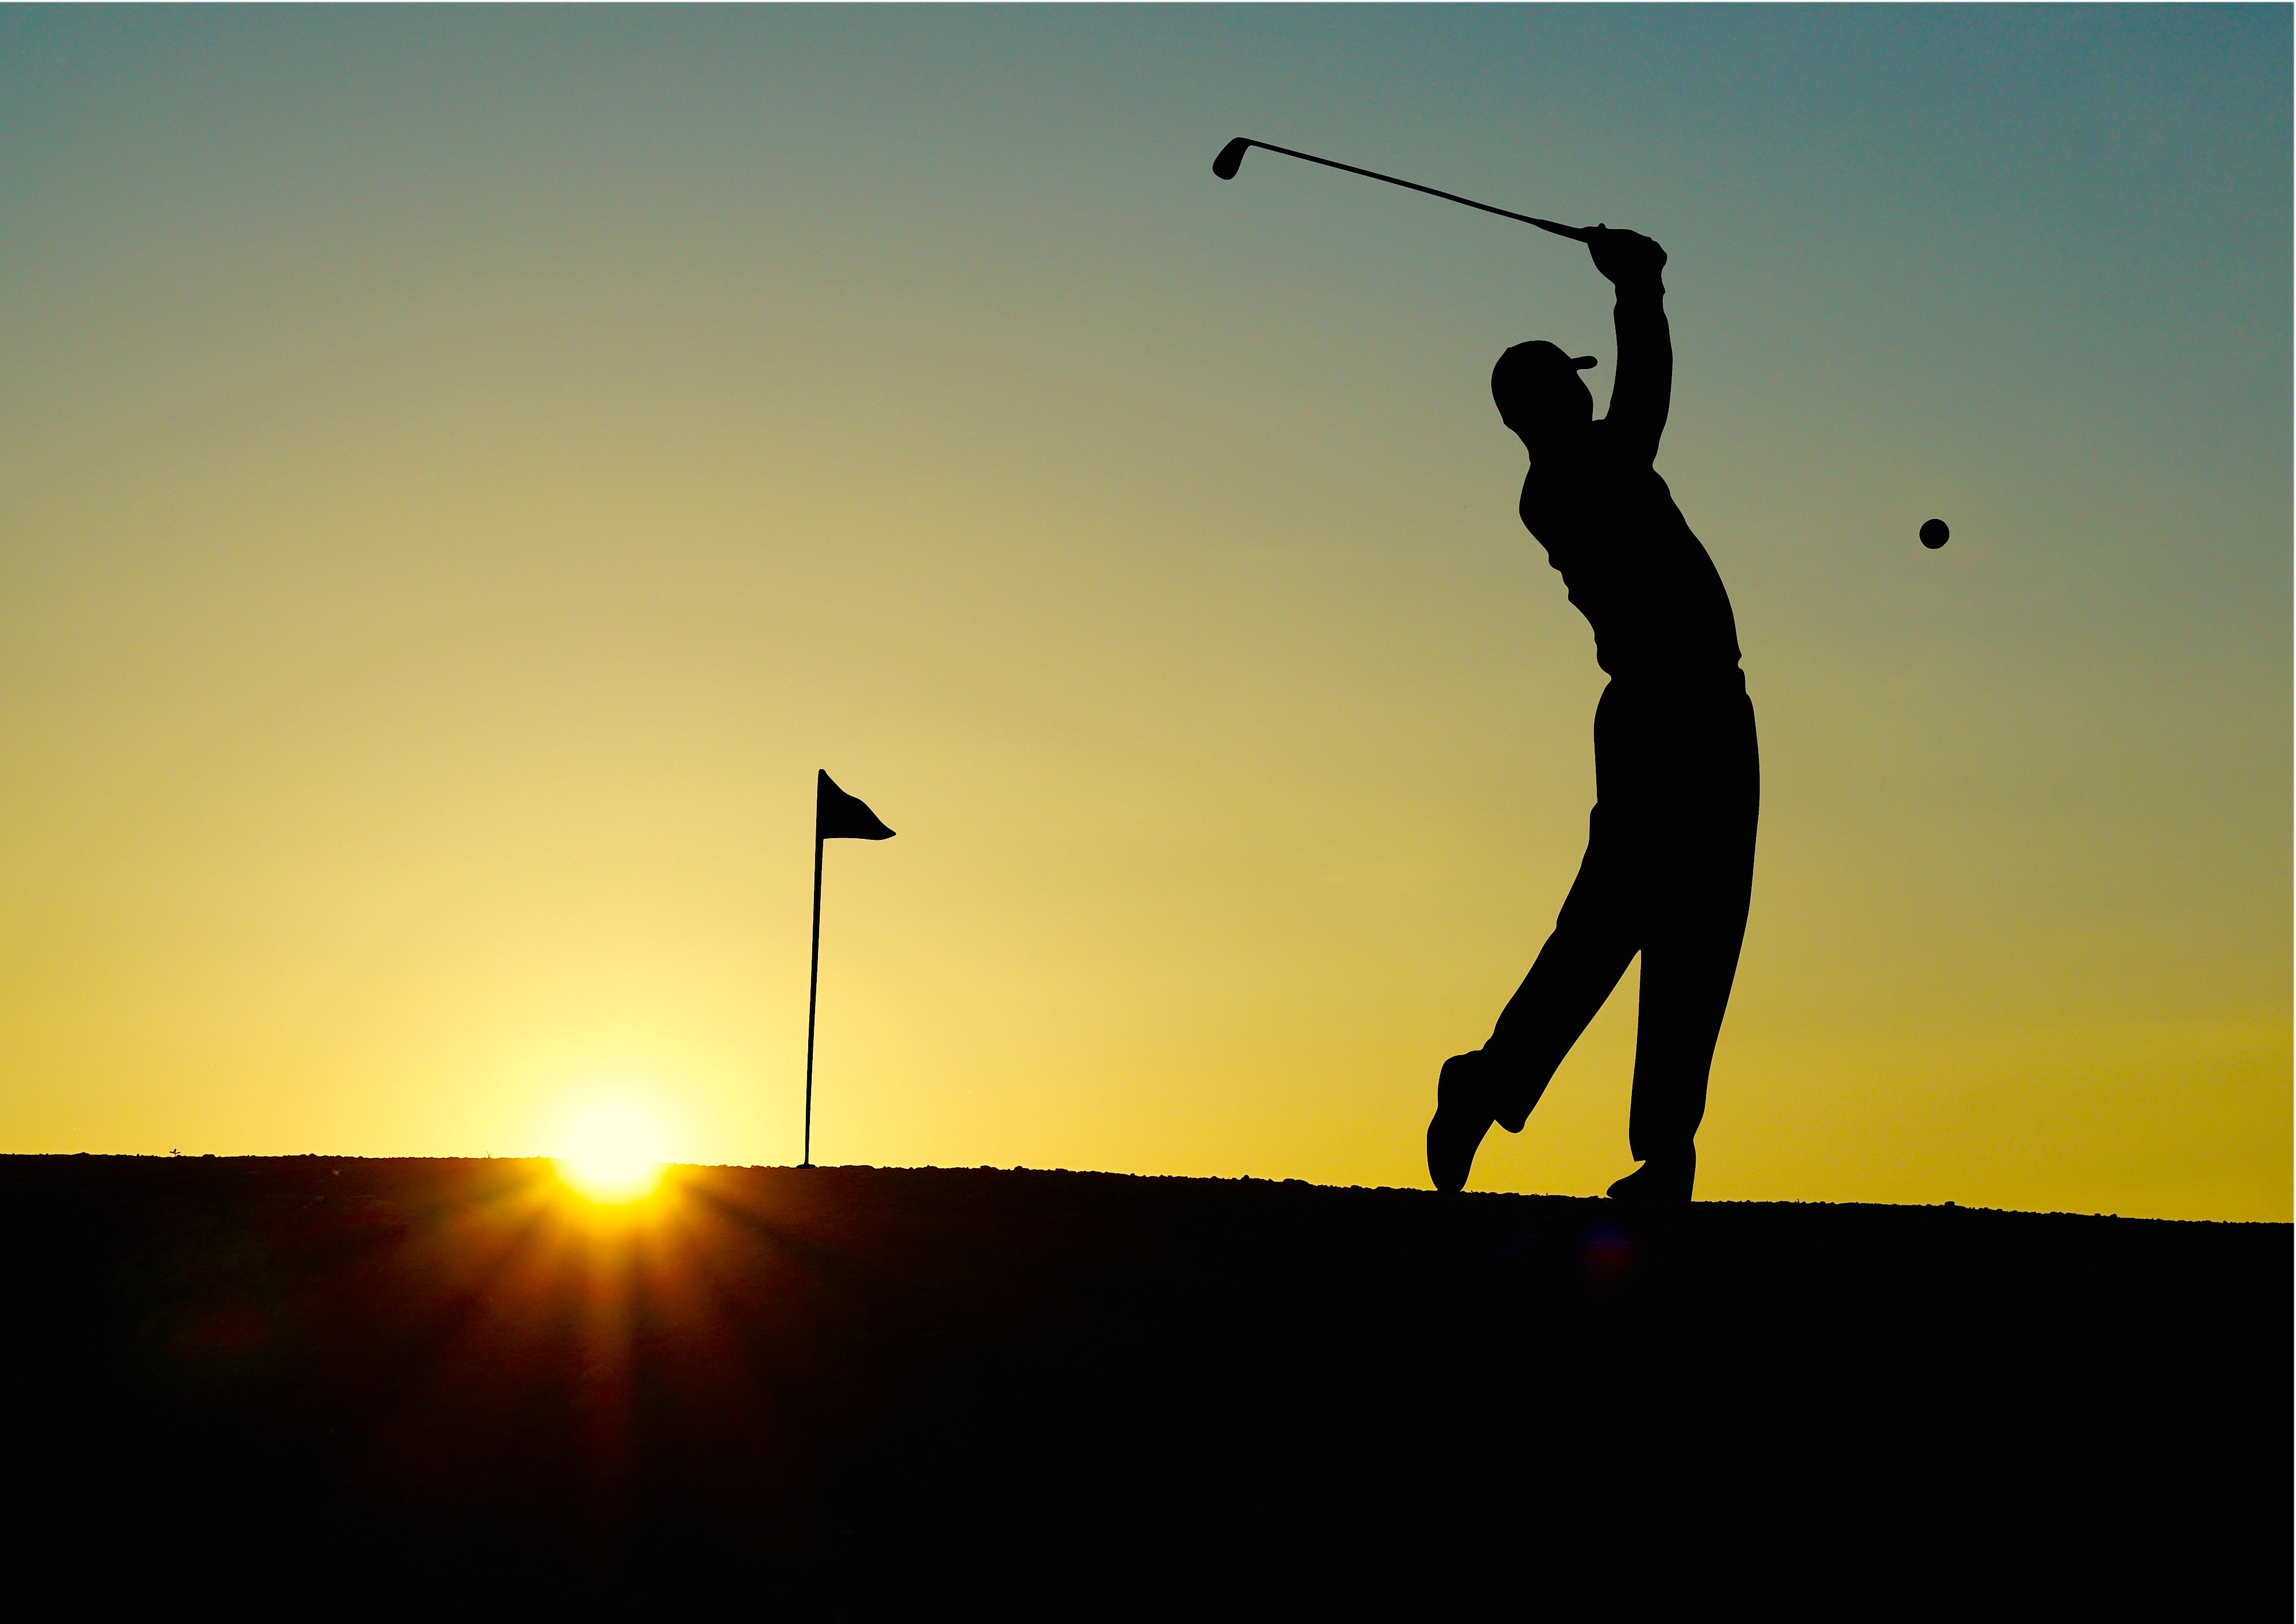 Do you enjoy playing sports. Golf. Гольф спорт. Гольф картинки. Гольфист со спины.